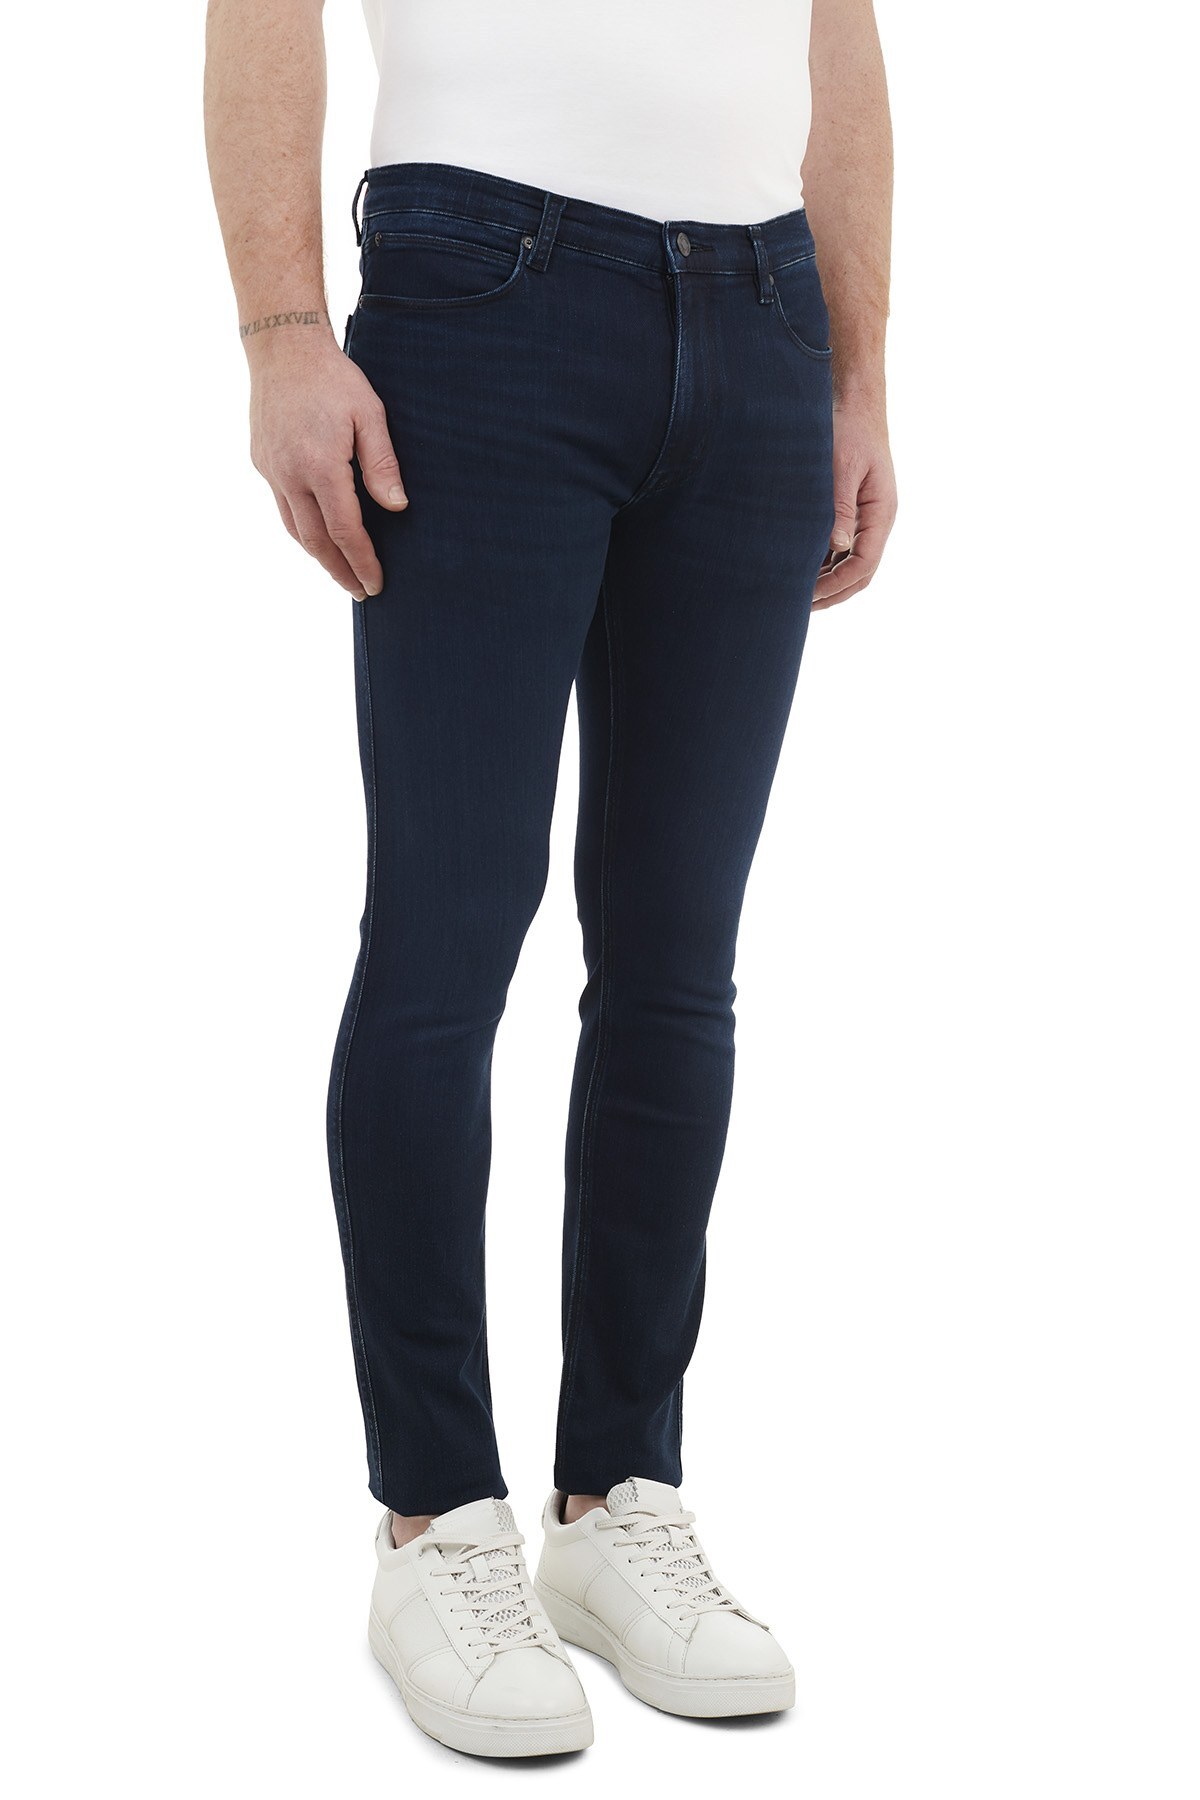 Hugo Boss Skinny Fit Pamuklu Jeans Erkek Kot Pantolon 50444672 405 LACİVERT